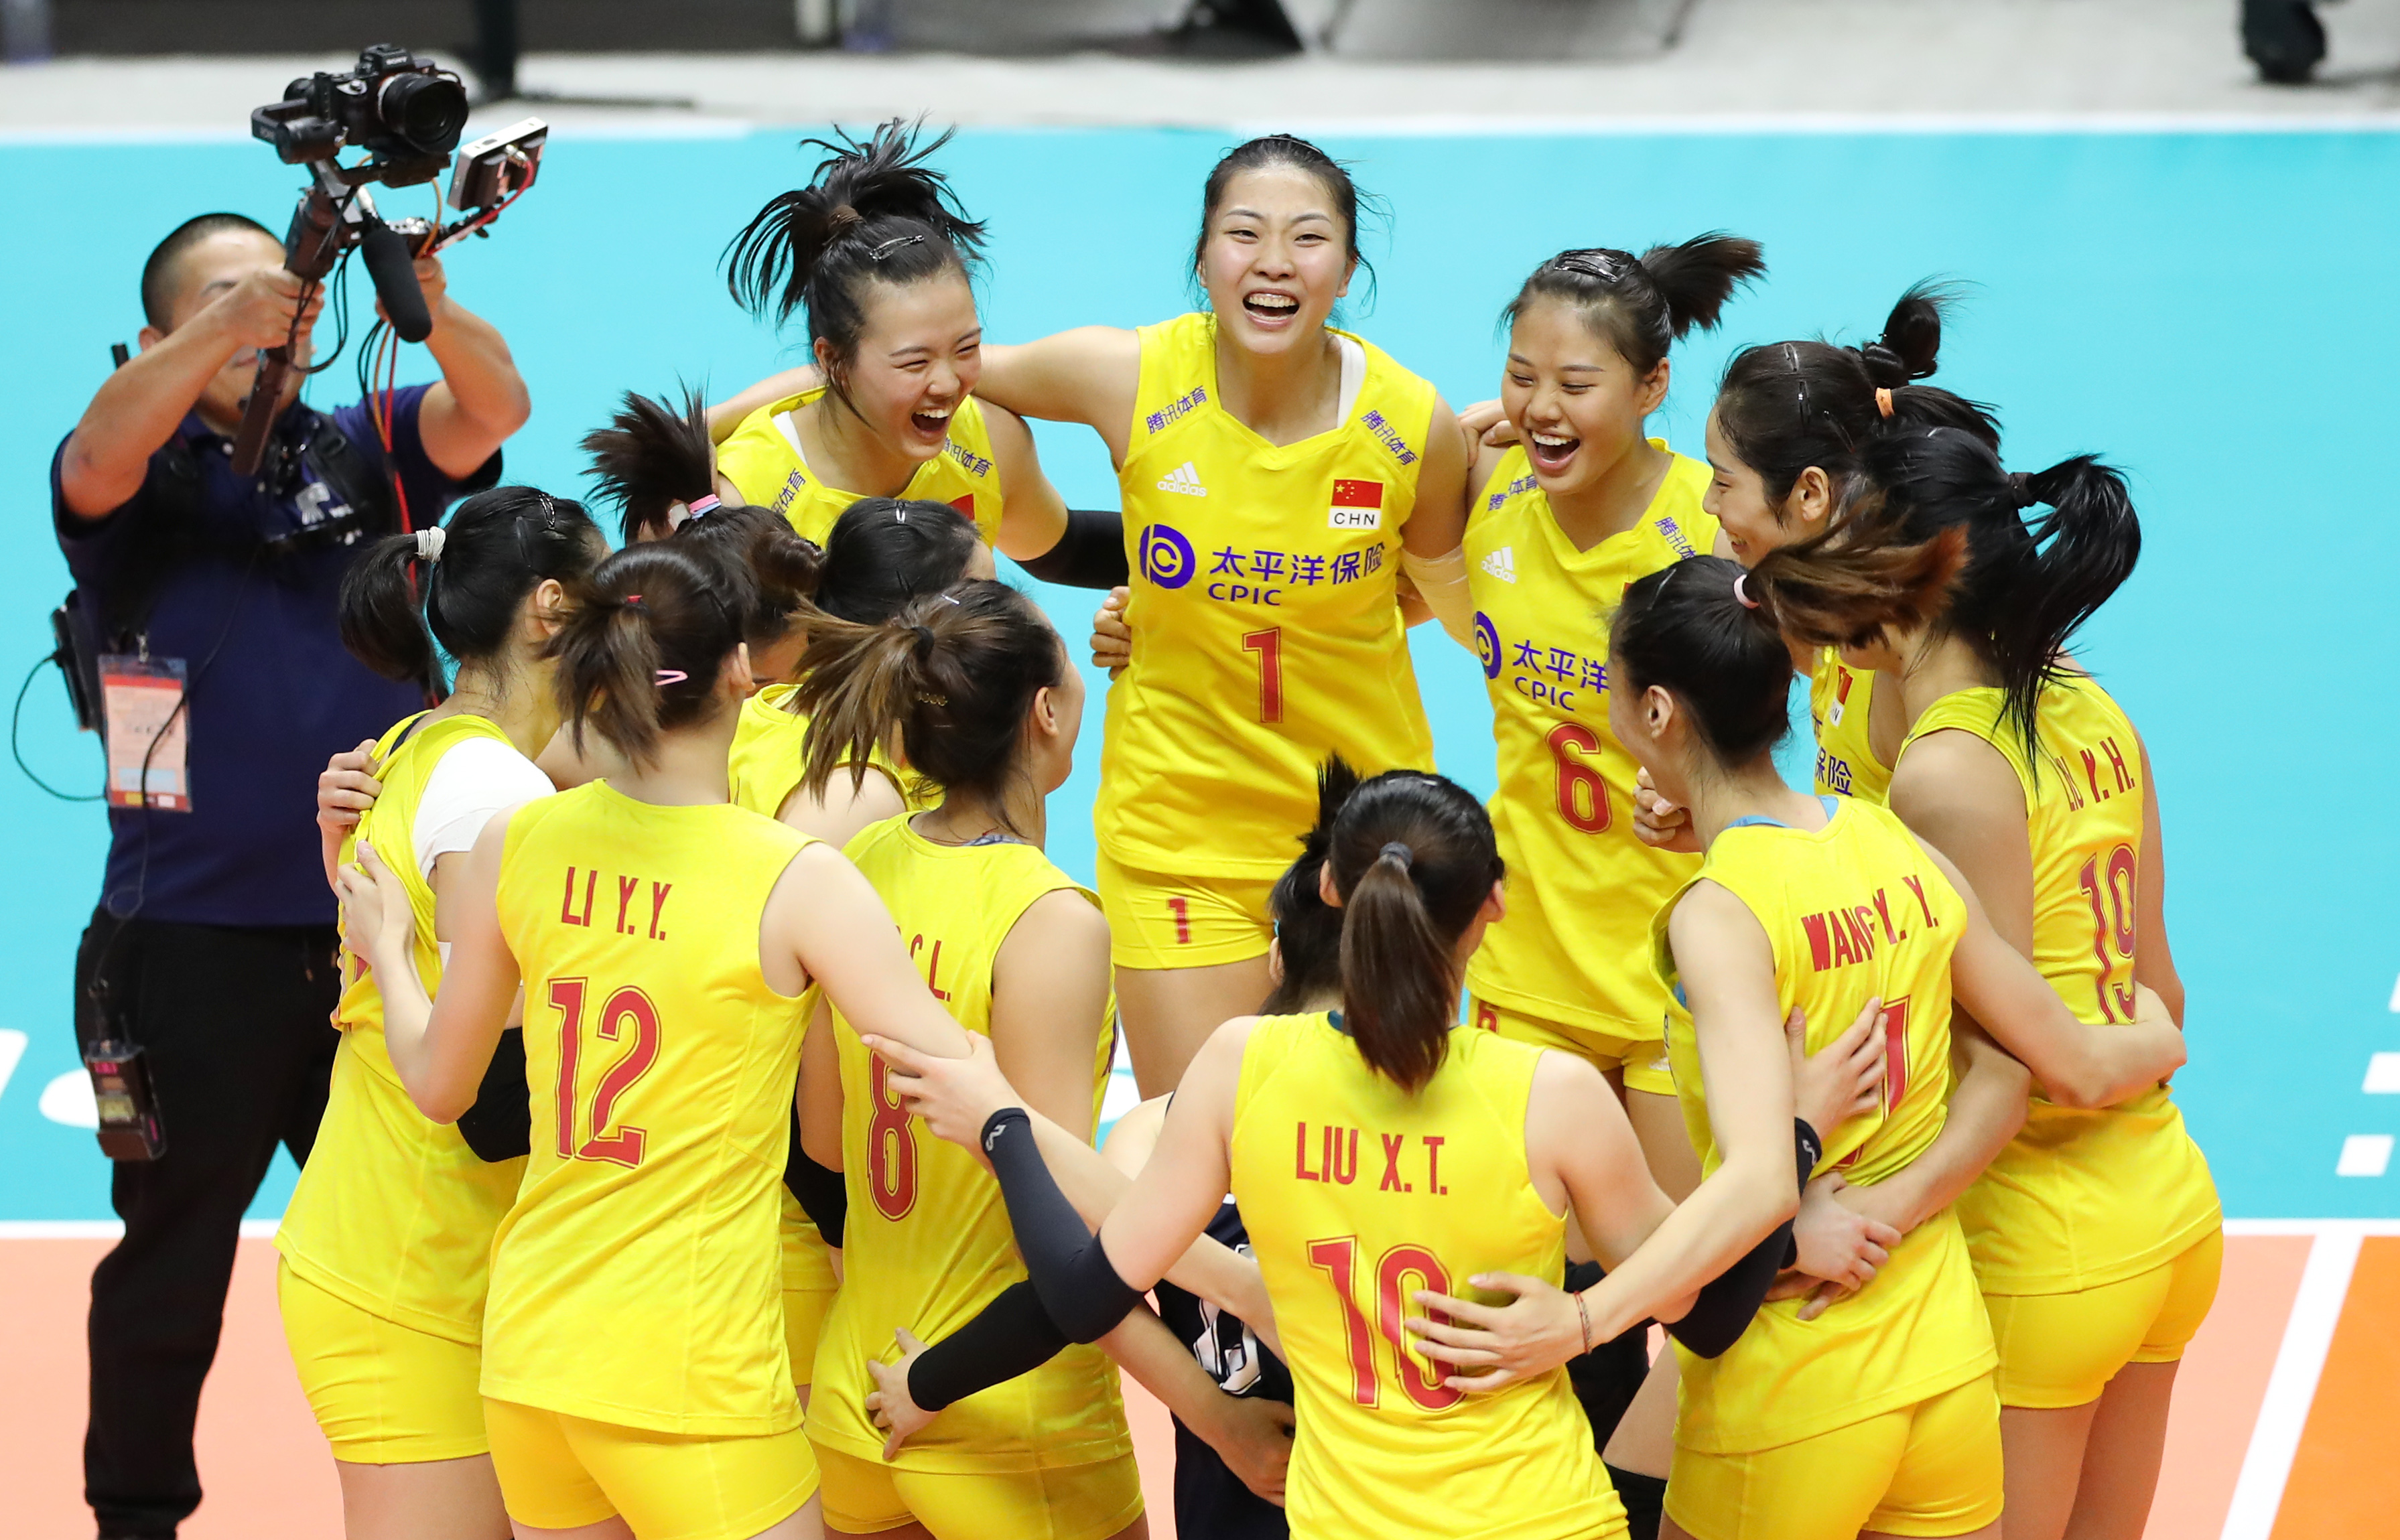 9月23日,中国队球员庆祝比赛胜利.新华社记者杜潇逸摄